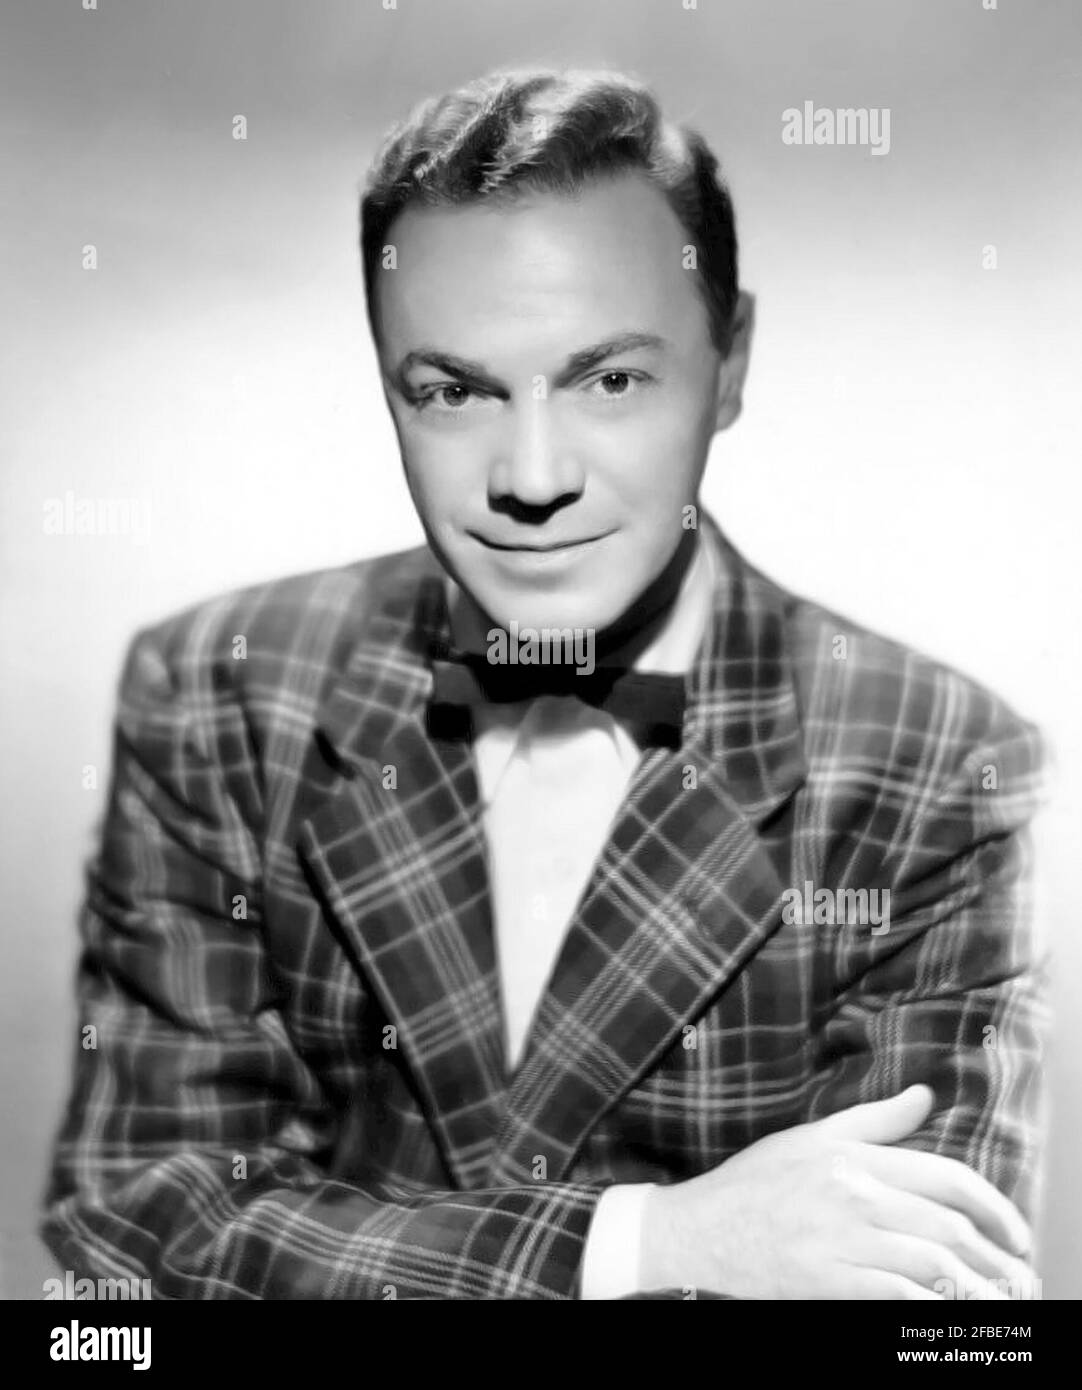 Alan se liberó. Retrato del jinete del disco americano, Albert James 'Alan' liberó (1921-1965), tiro de cabeza, c. 1958 Foto de stock